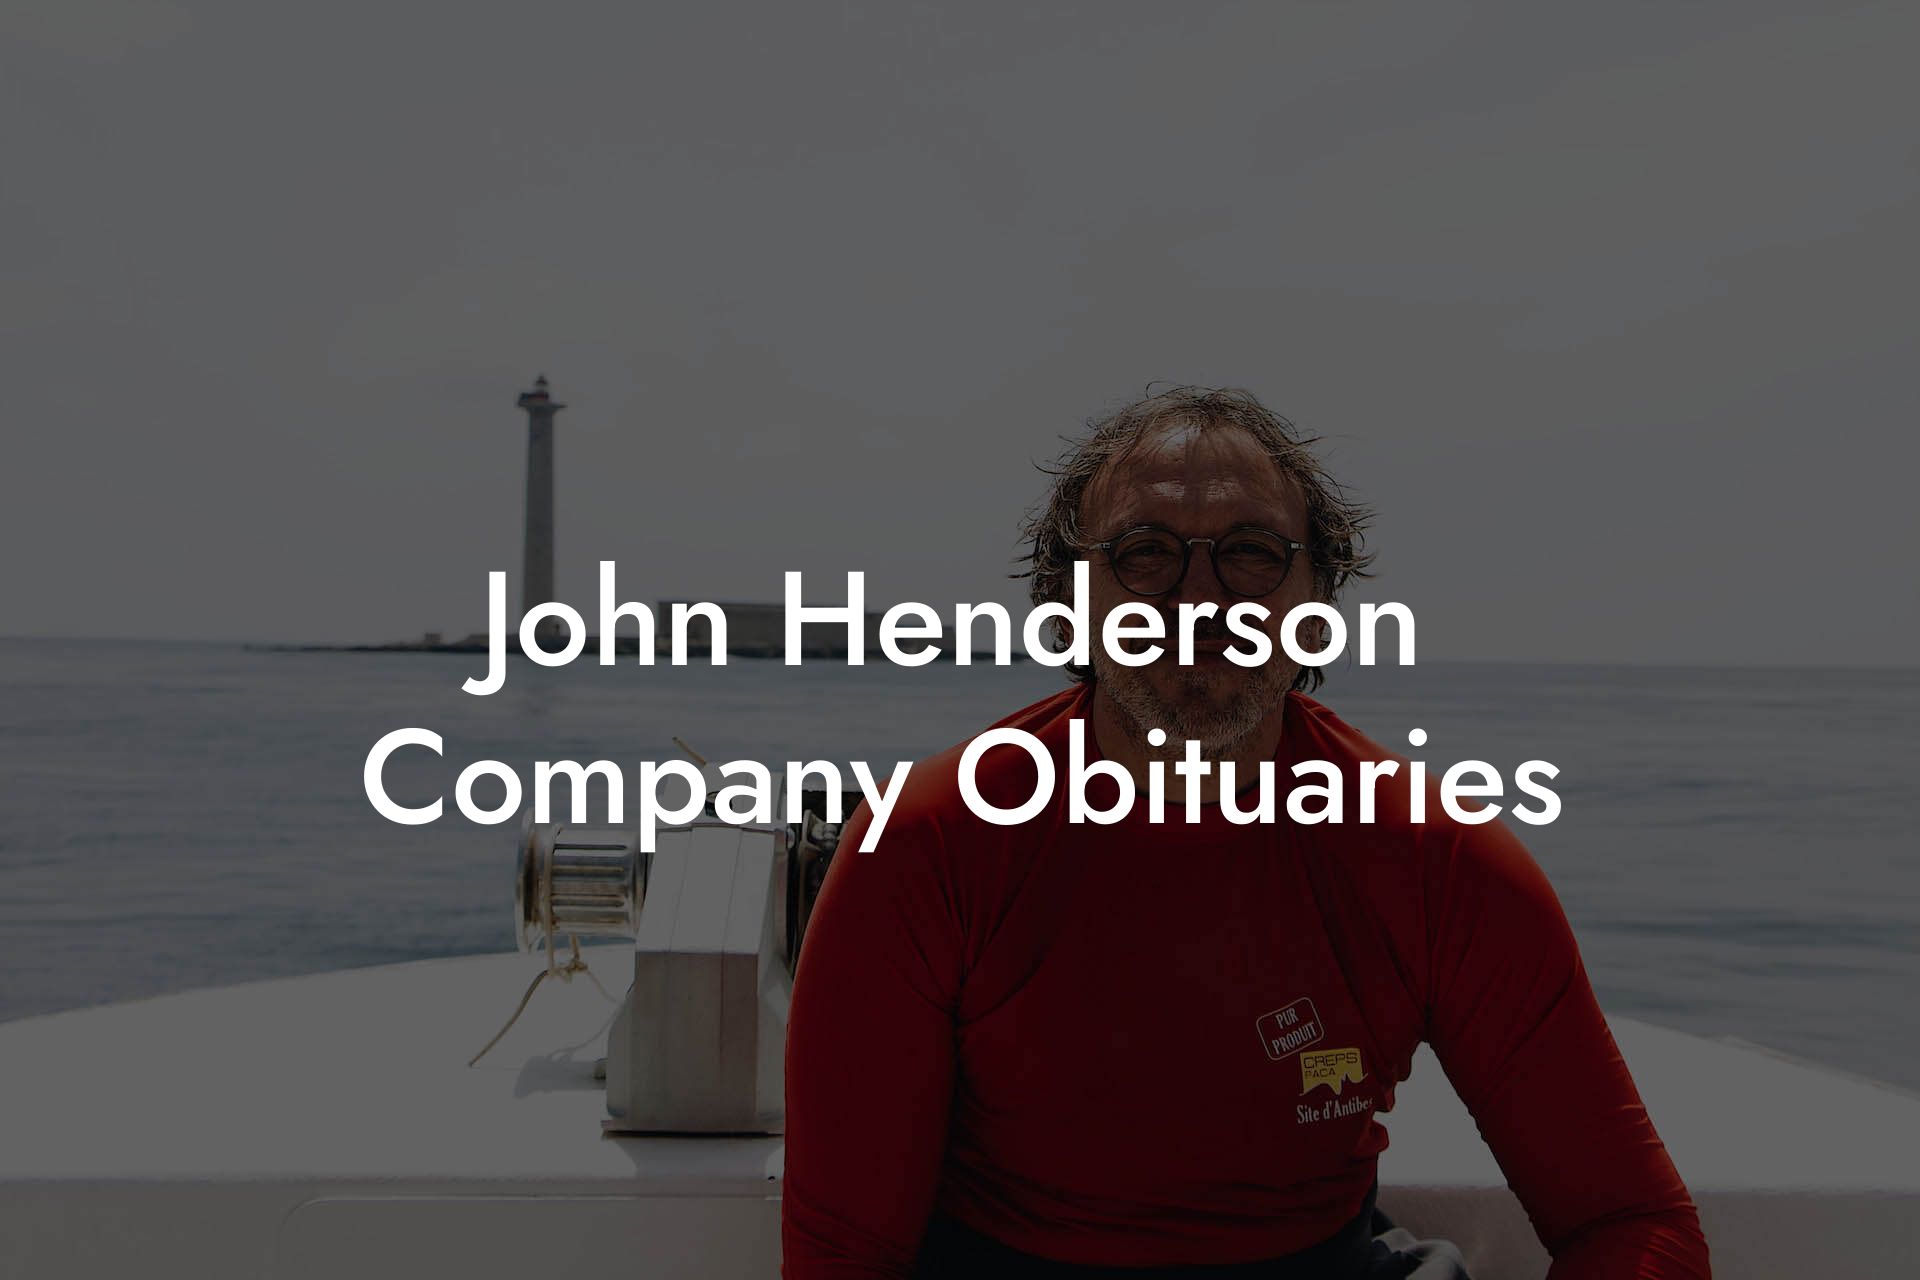 John Henderson Company Obituaries